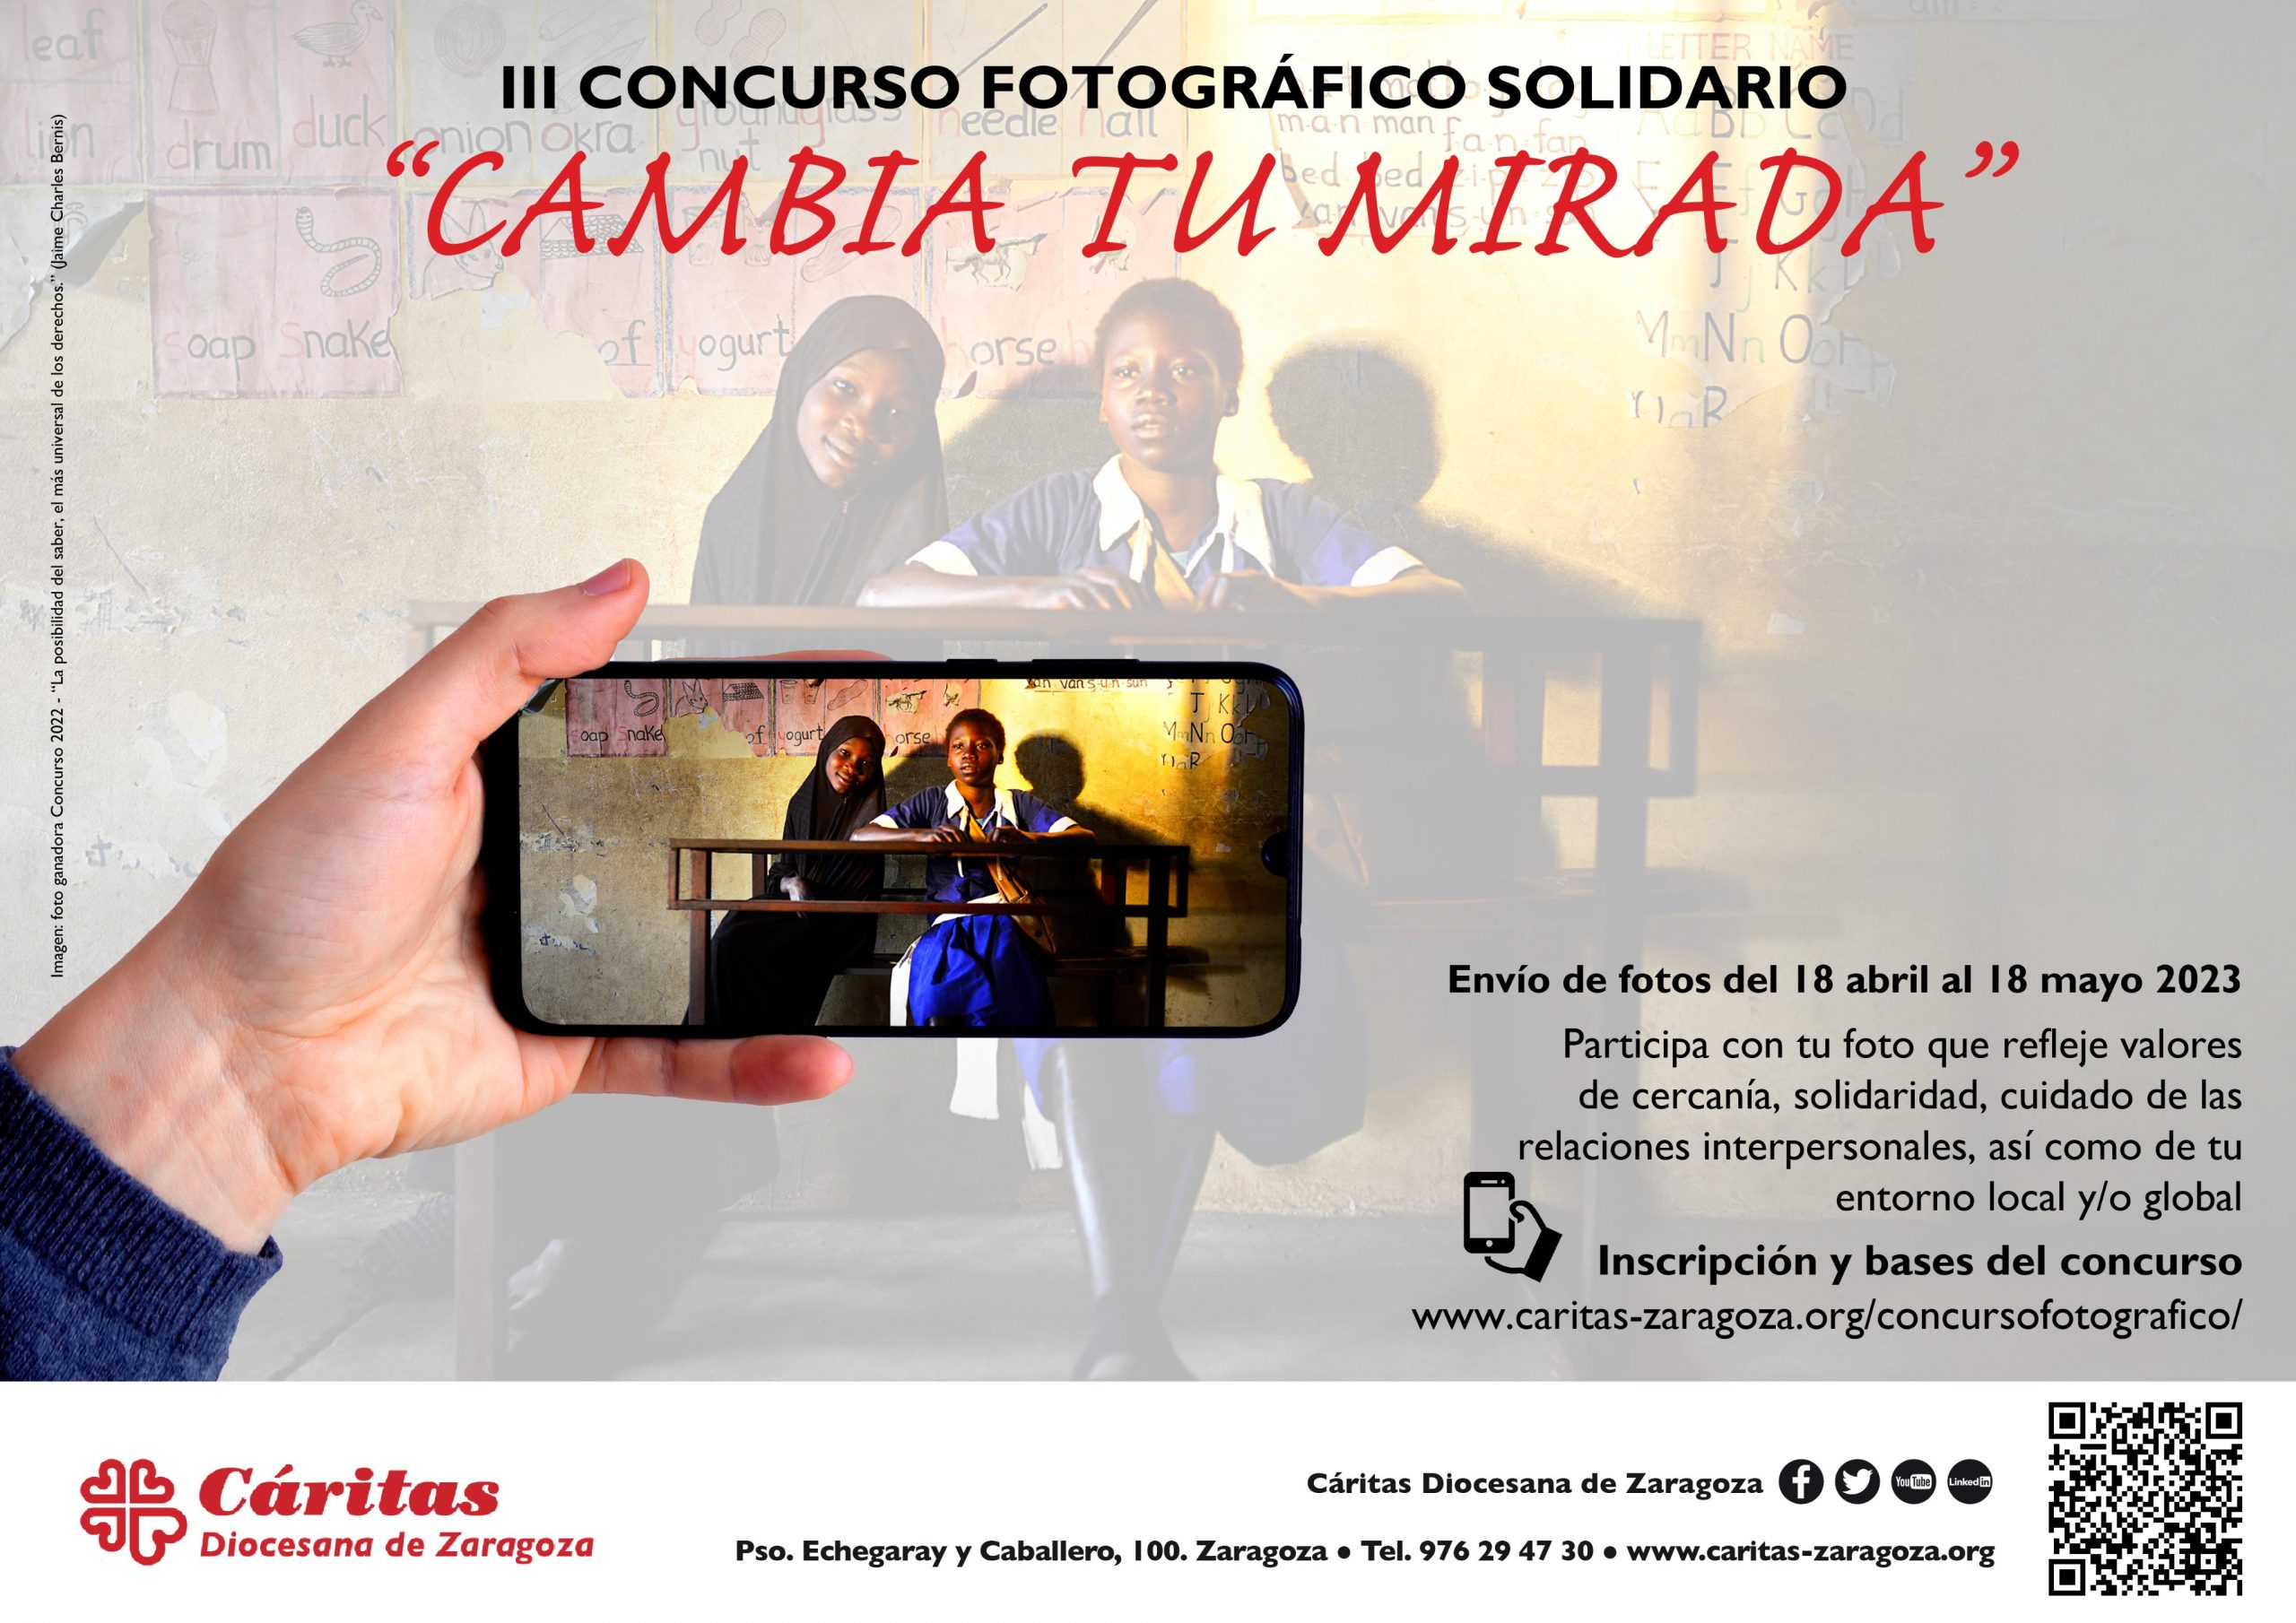 III Concurso fotográfico Solidario "Cambia tu mirada"